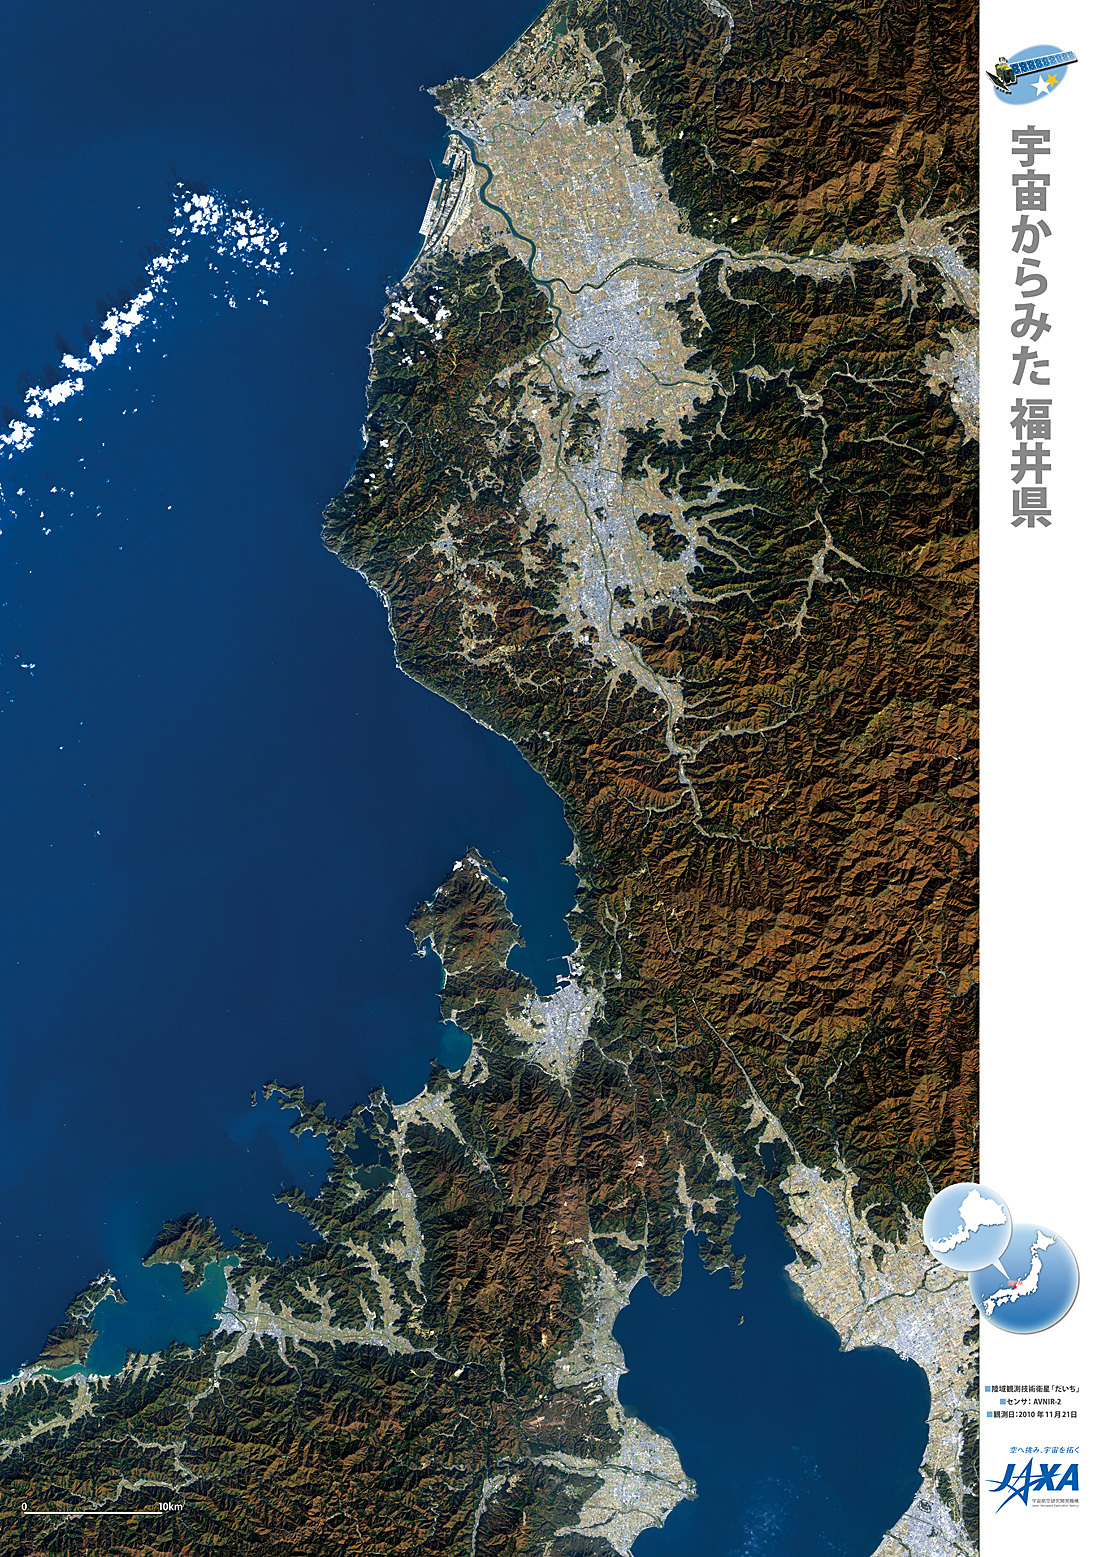 だいちから見た日本の都市 福井県:衛星画像（ポスター仕上げ）